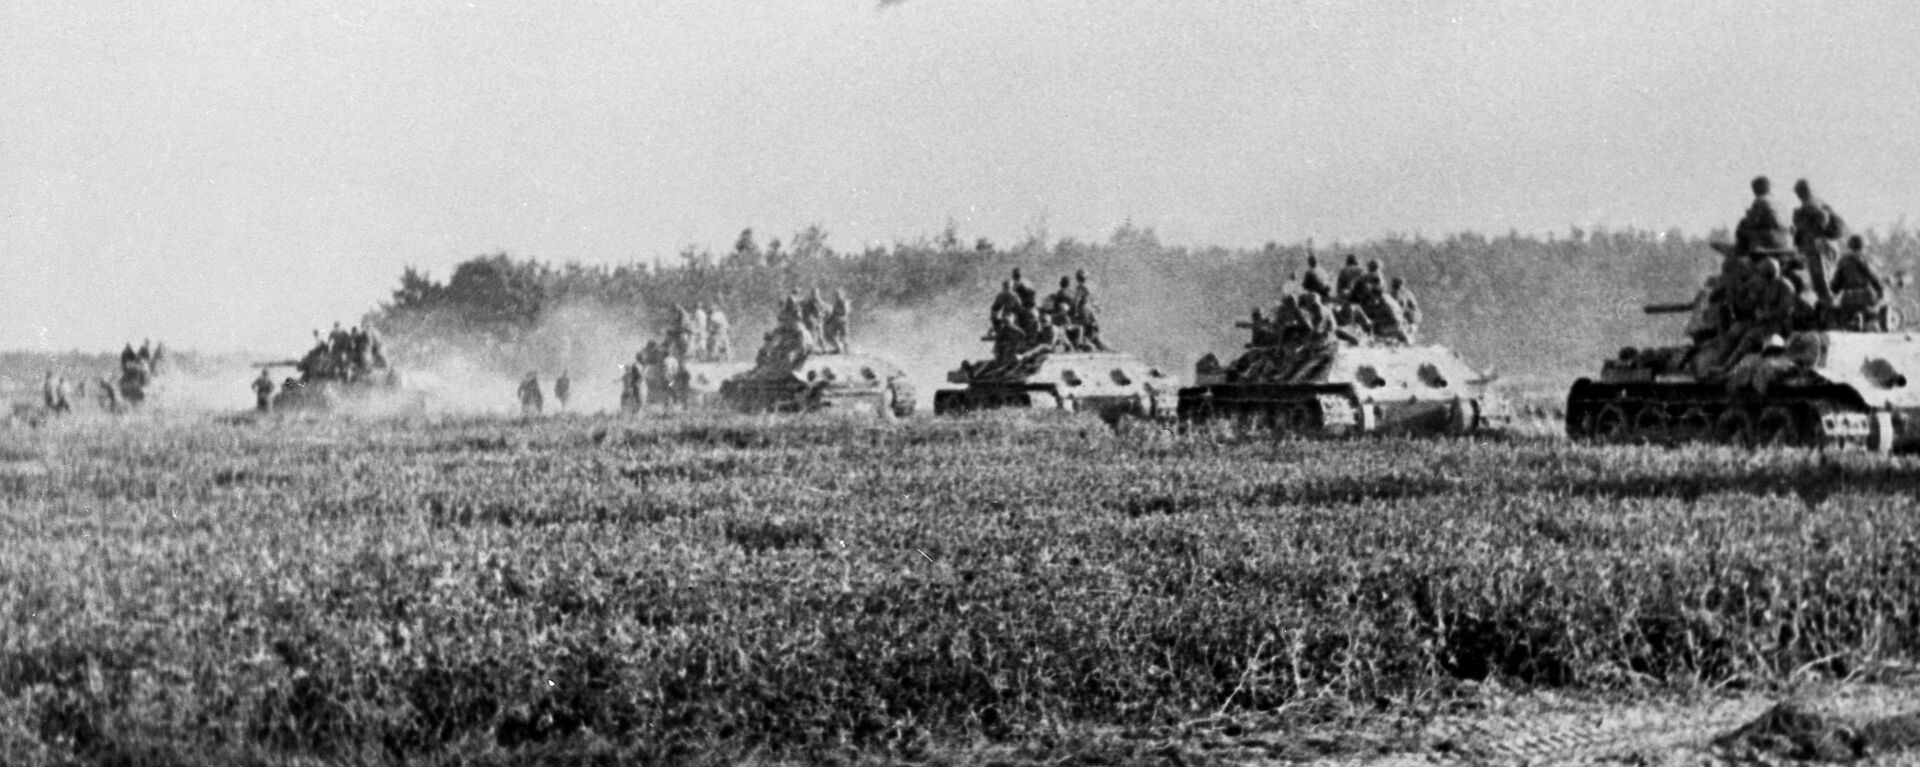 Битва на Курской дуге (5 июля 1943 г. -  23 августа 1943 г.)  - Sputnik Южная Осетия, 1920, 23.08.2020